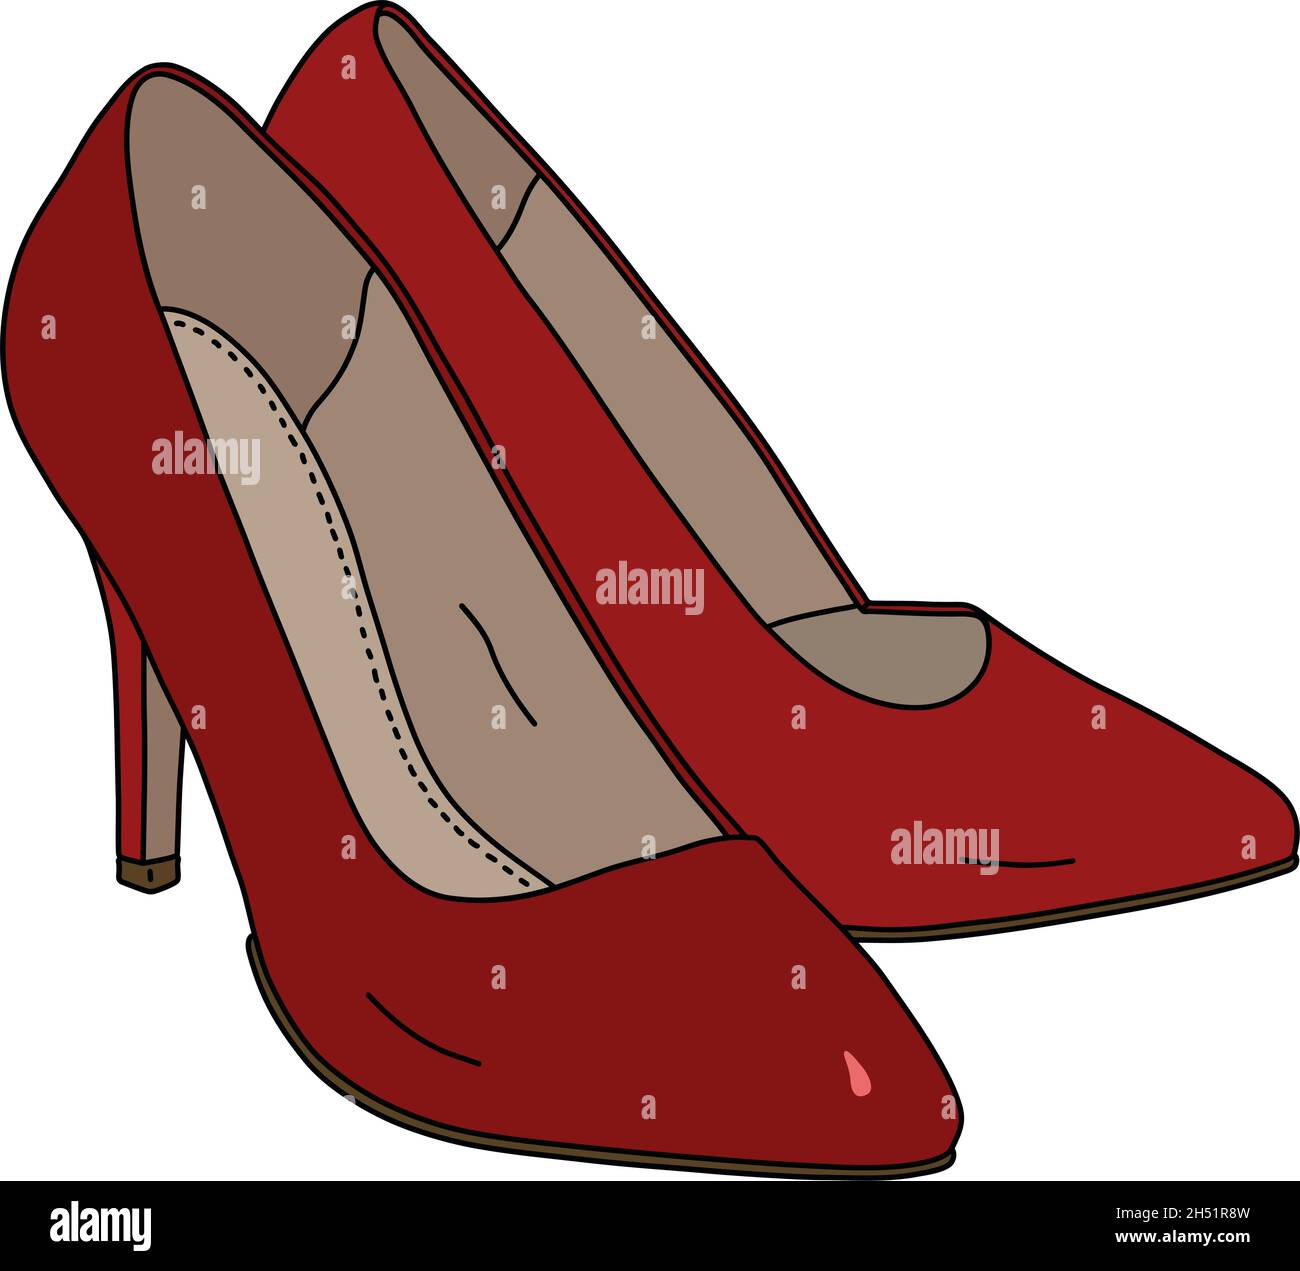 Le dessin à la main vectorisé de chaussures rouges pour femmes sur des  talons hauts Image Vectorielle Stock - Alamy